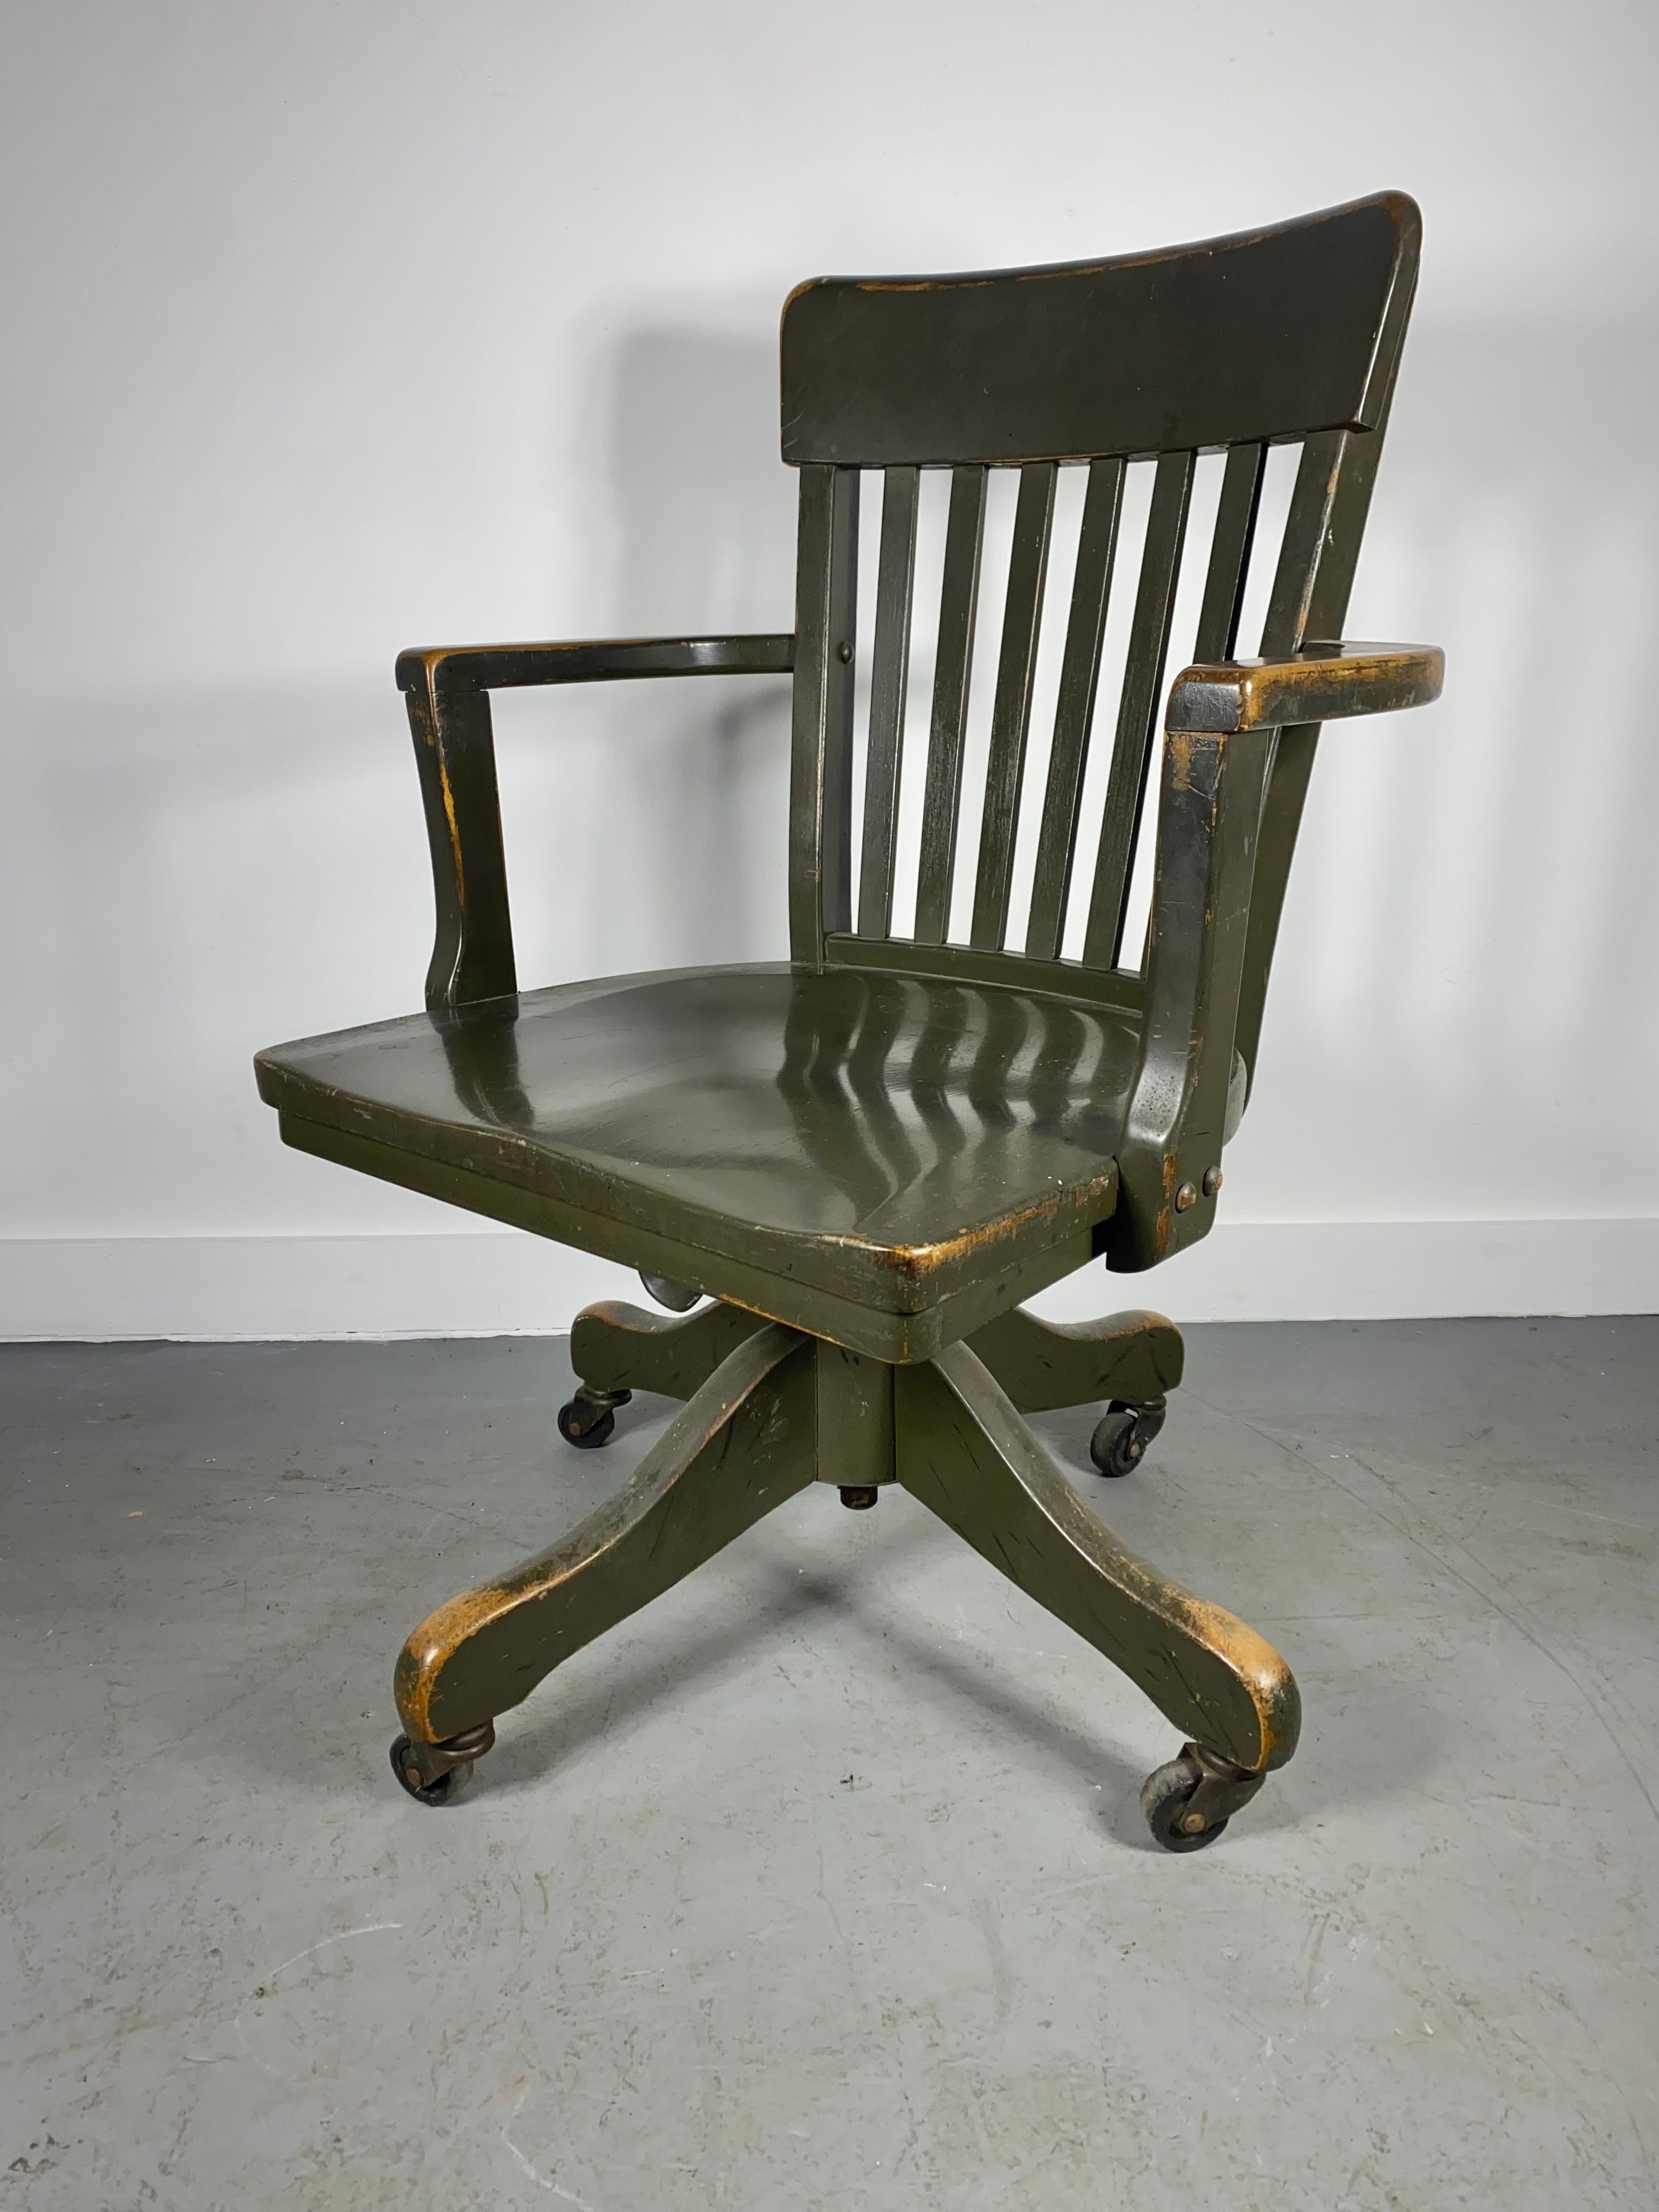 Chaise de bureau / de travail classique, ancienne, industrielle et basculante, attribuée à la Sikes Chair Company,,, récupérée à partir de  CURTISS-WRIGHT CORP. Airplane Label... conserve l'étiquette d'origine Curtiss Wright,,,,Merveilleuse patine